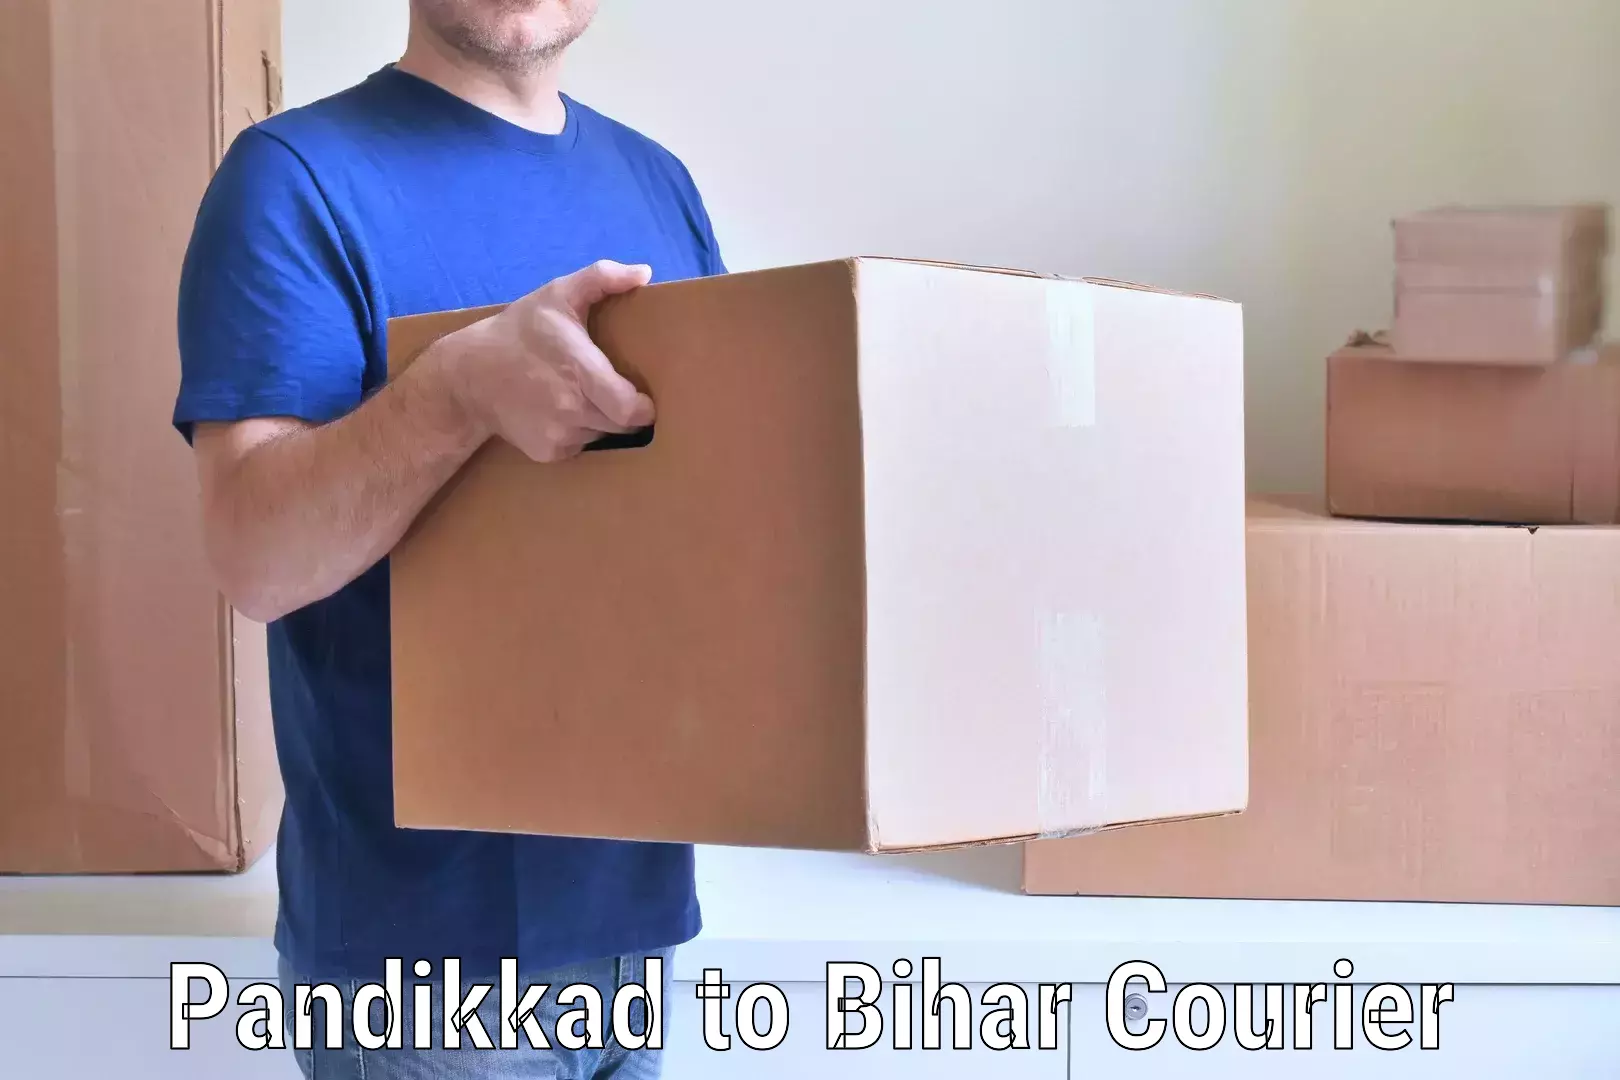 Efficient moving strategies Pandikkad to Arwal